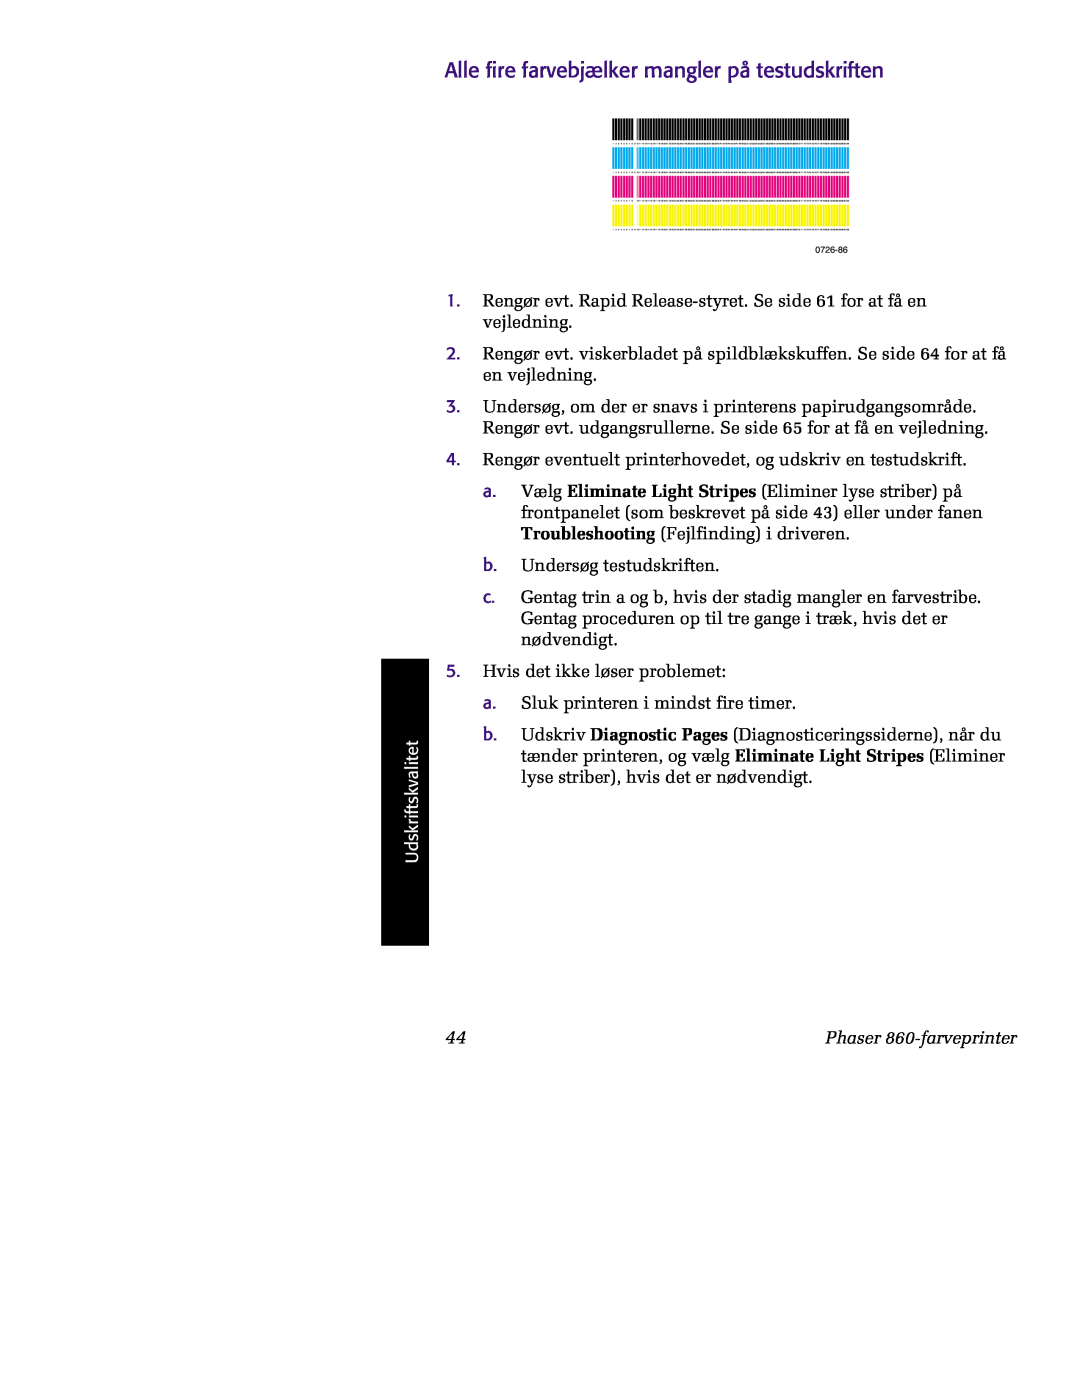 Tektronix manual 0726, Alle fire farvebjælker mangler på testudskriften, Udskriftskvalitet, Phaser 860-farveprinter 